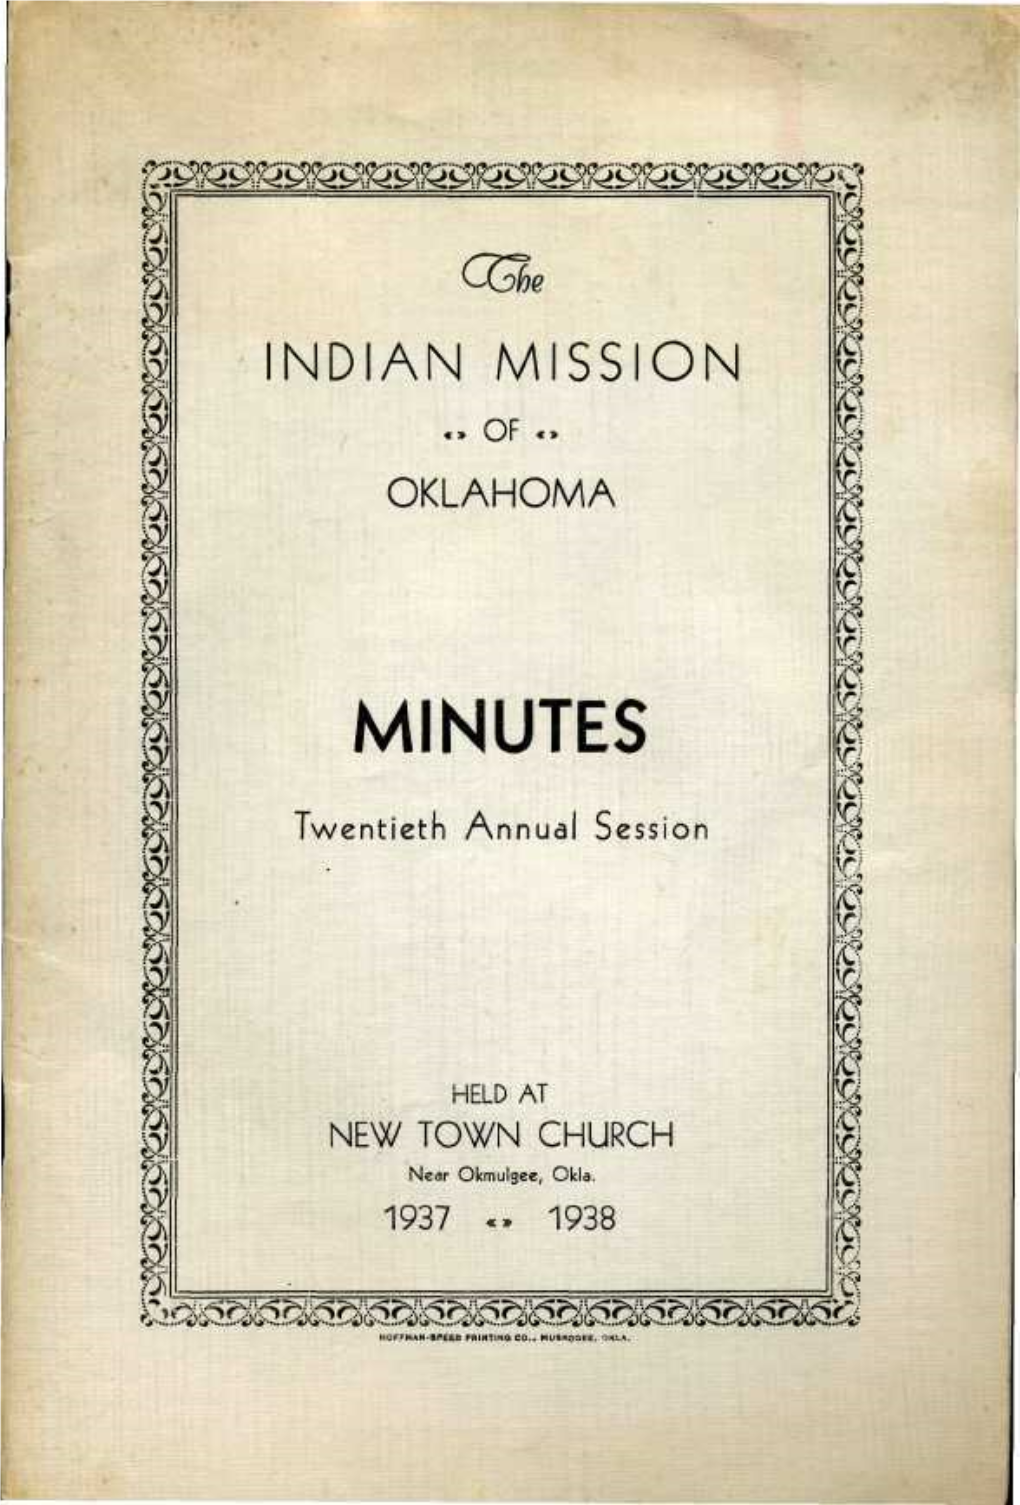 NDIAN MISSION Fi Fa «» Or «» I Fa OKLAHOMA Fa Fi I'j\ MINUTES Fi 1 As 1 Twentieth Annual Session I Fi